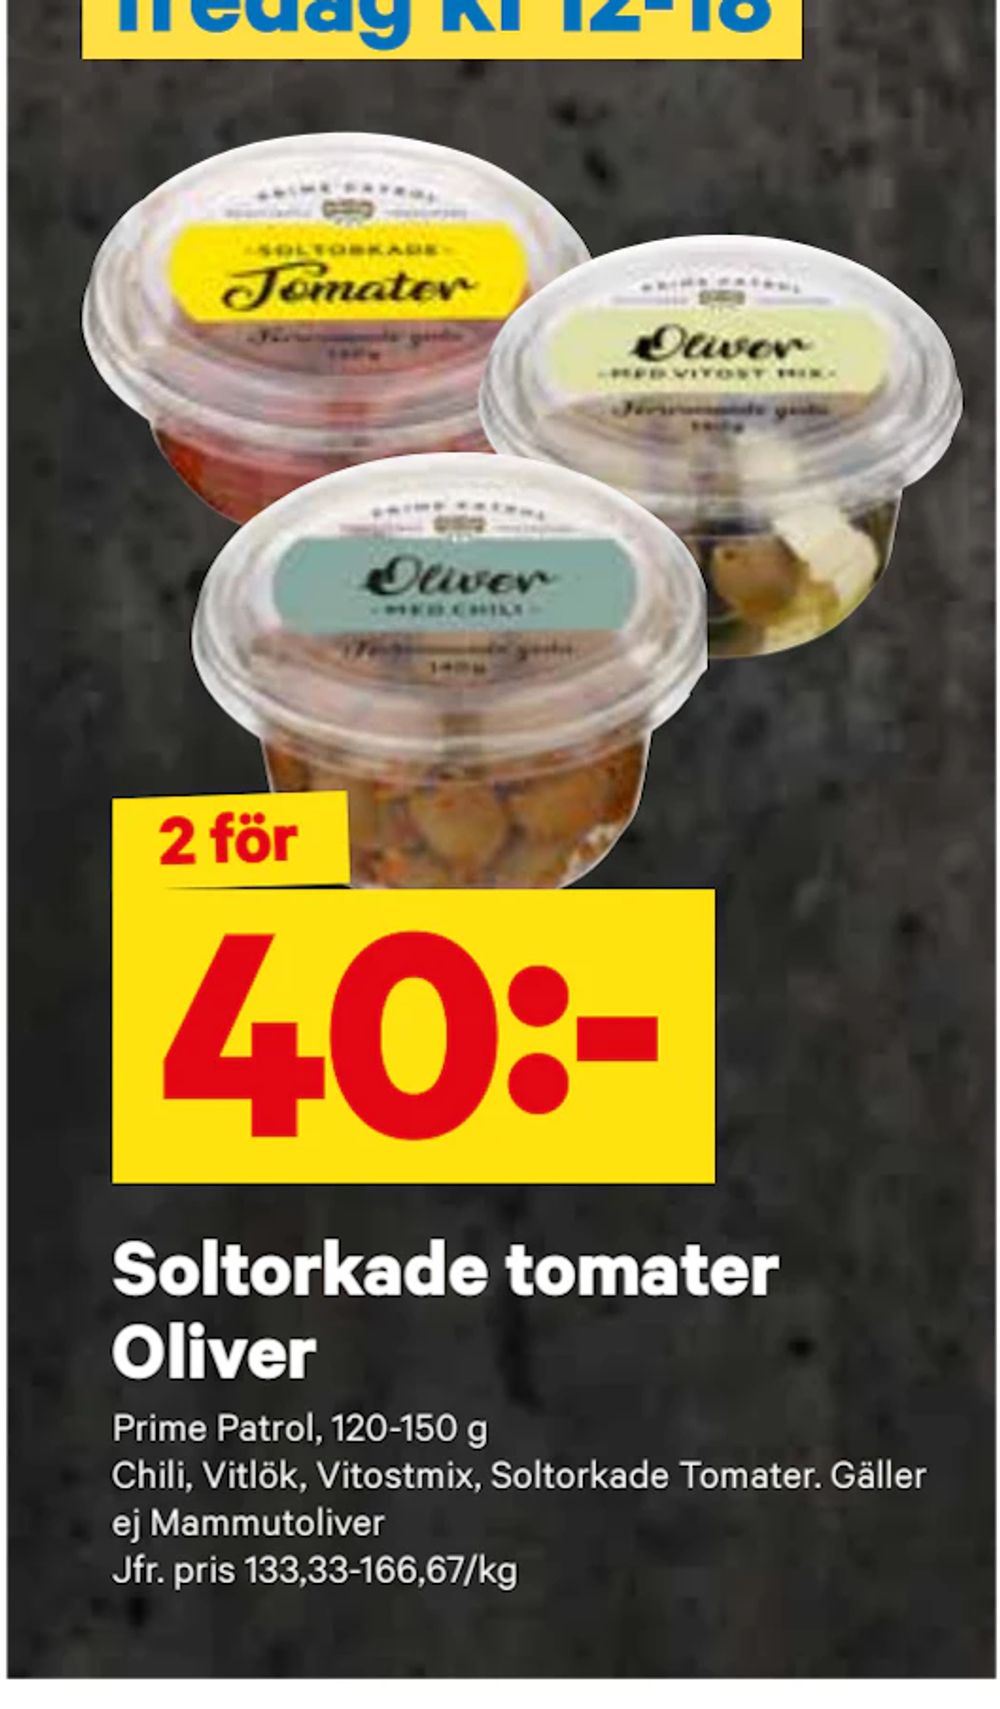 Erbjudanden på Soltorkade tomater Oliver från City Gross för 40 kr